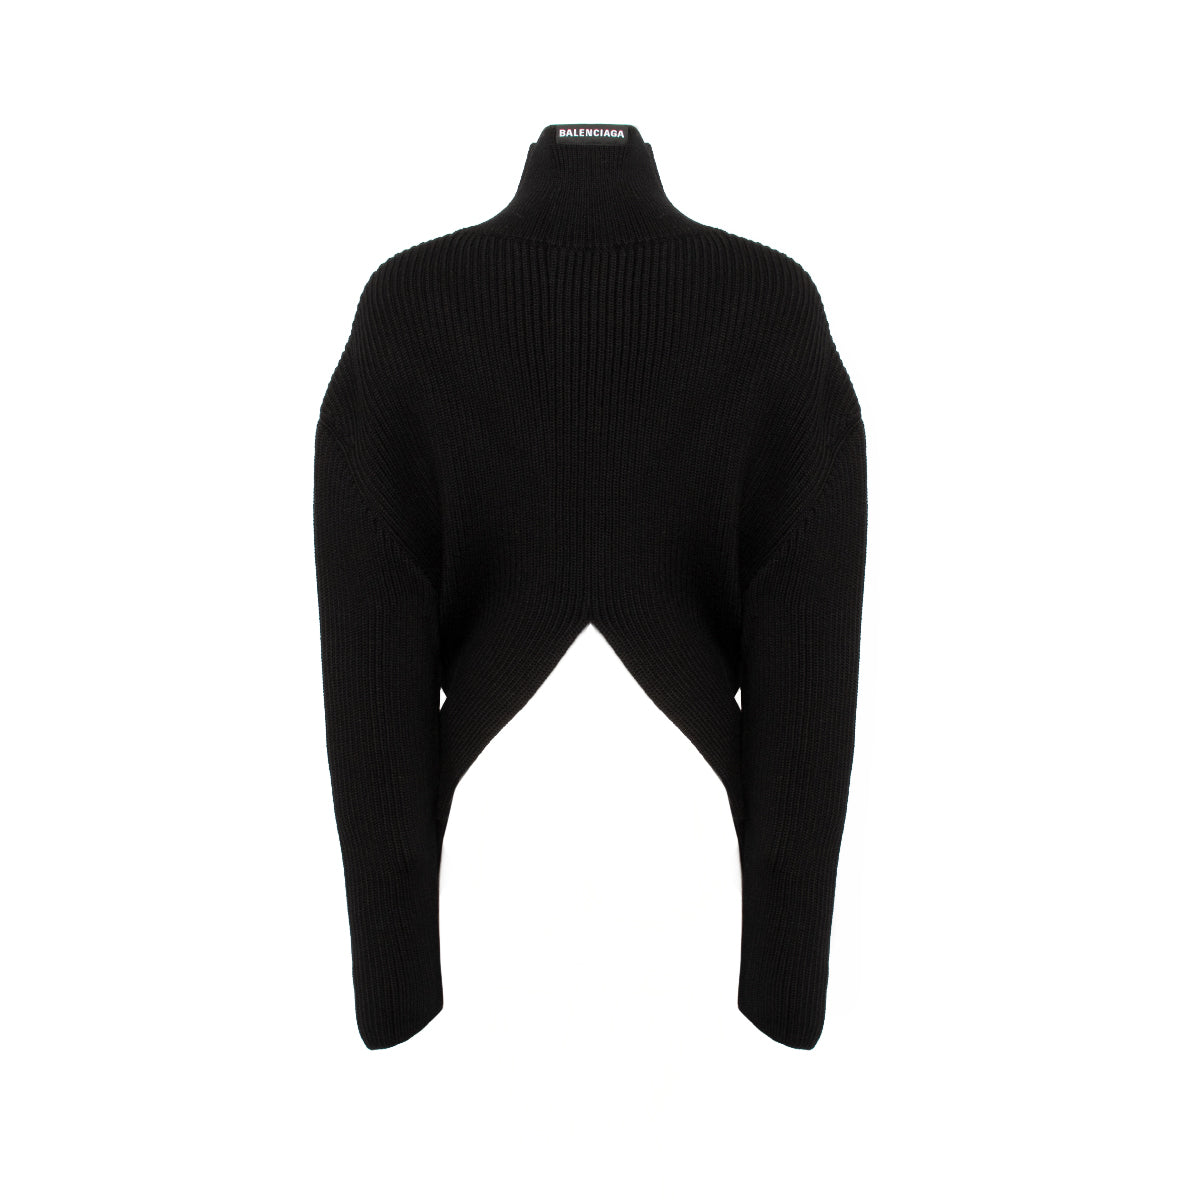 Upside Down Turtleneck Sweater in Black